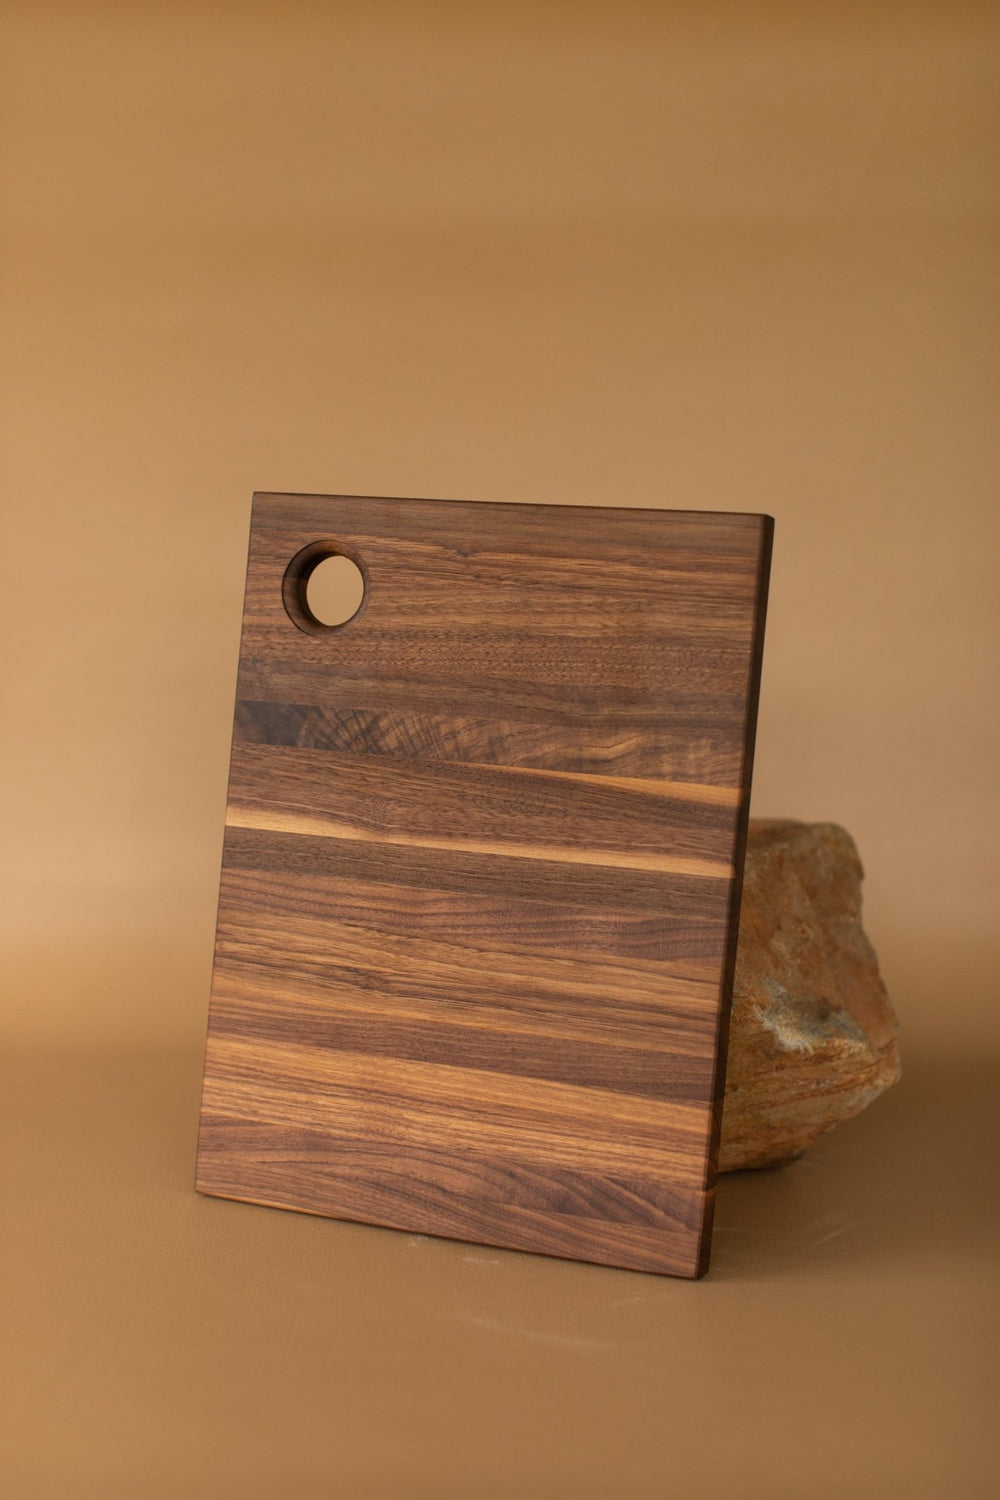 Sonder-LA-Franklin-Large-Edge-Grain-Walnut-Wood-Cutting-Board -20-by-15_600x.jpg?v=1684879323